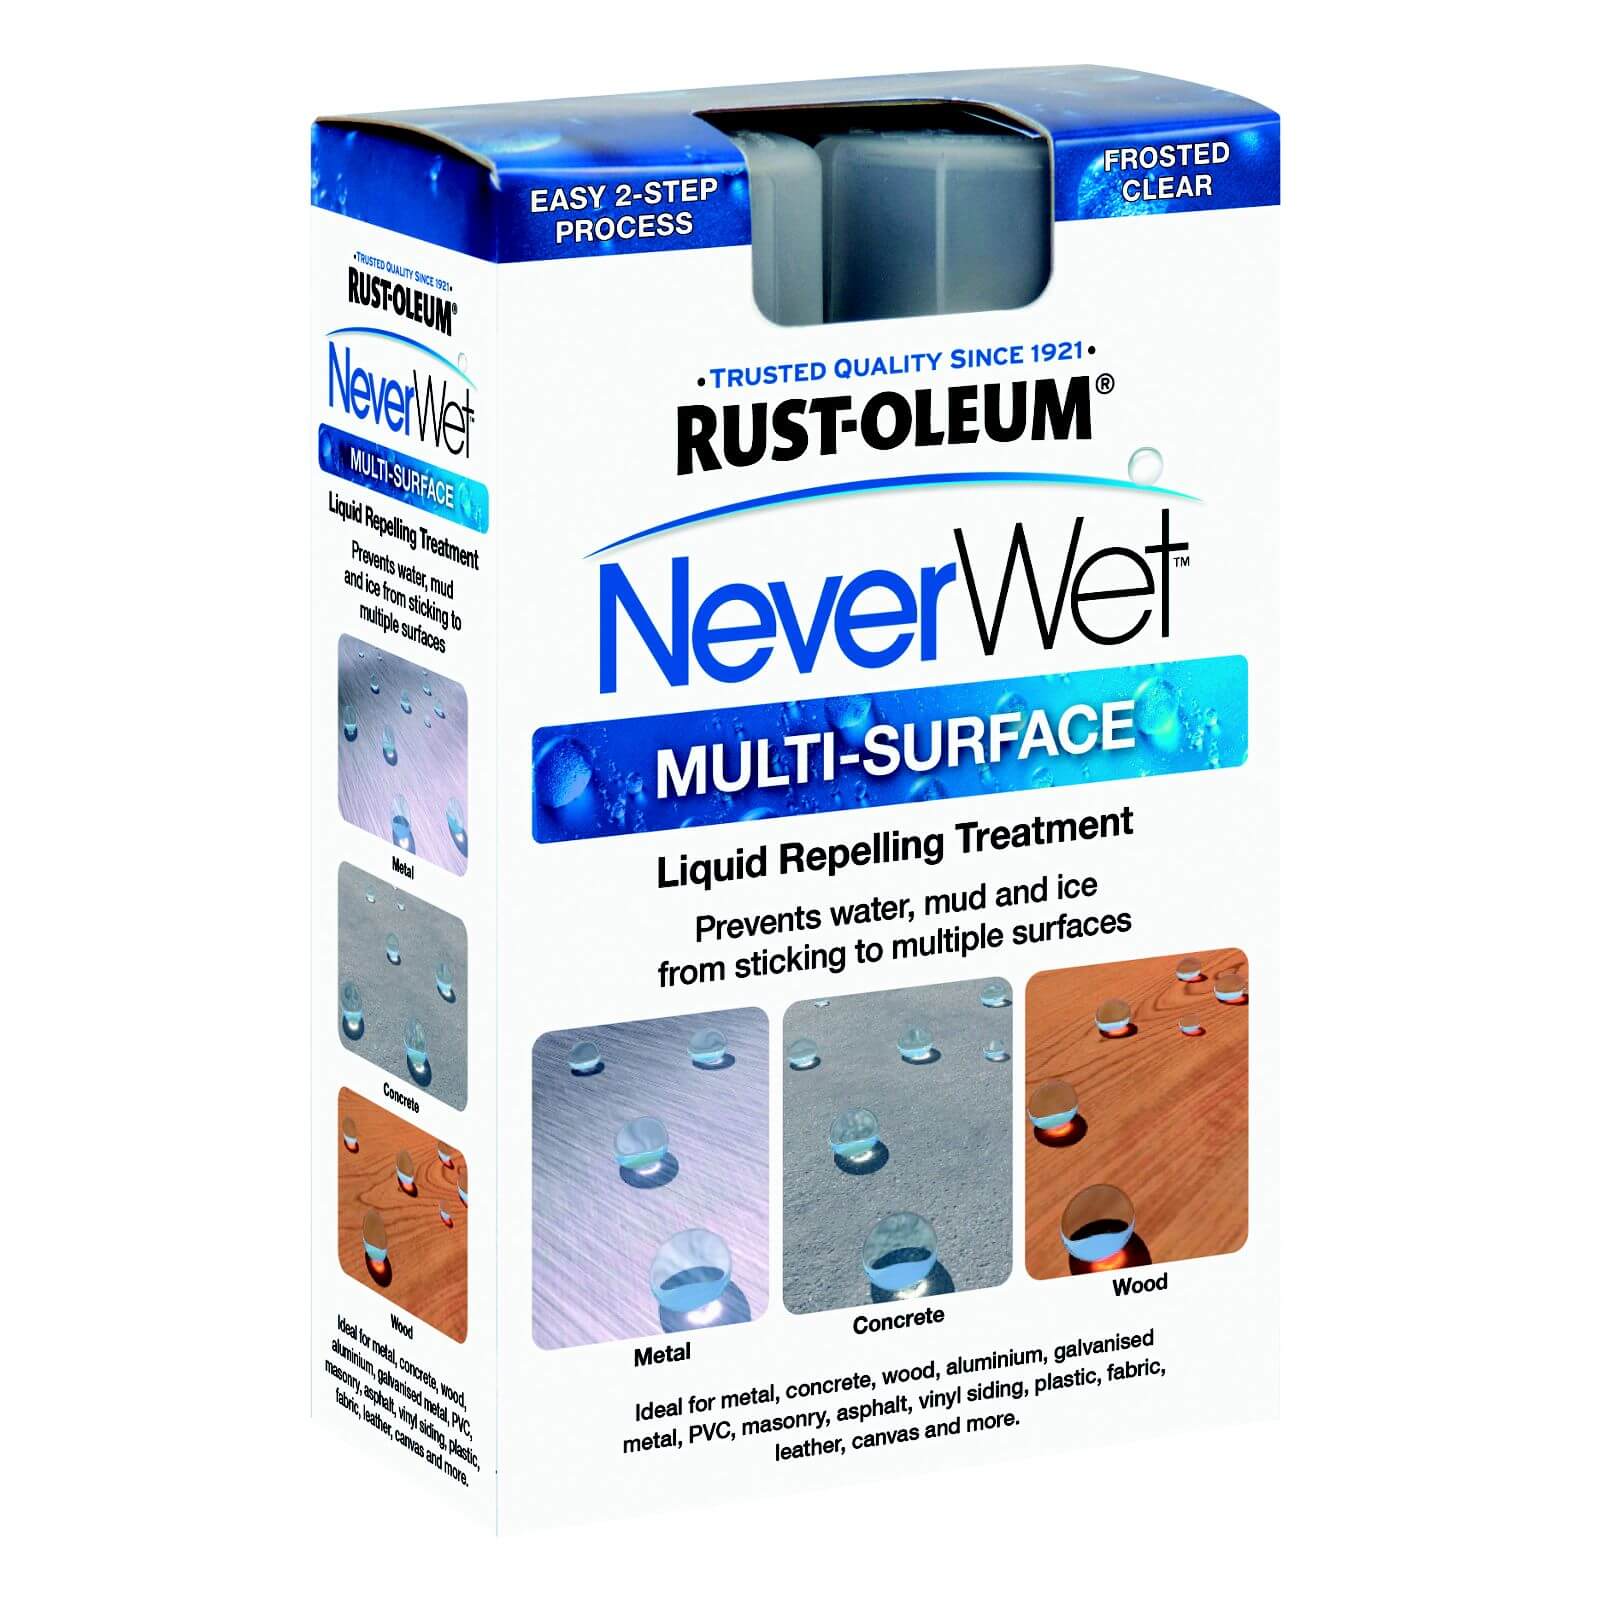 Rust-Oleum NeverWet Liquid Repelling Treatment